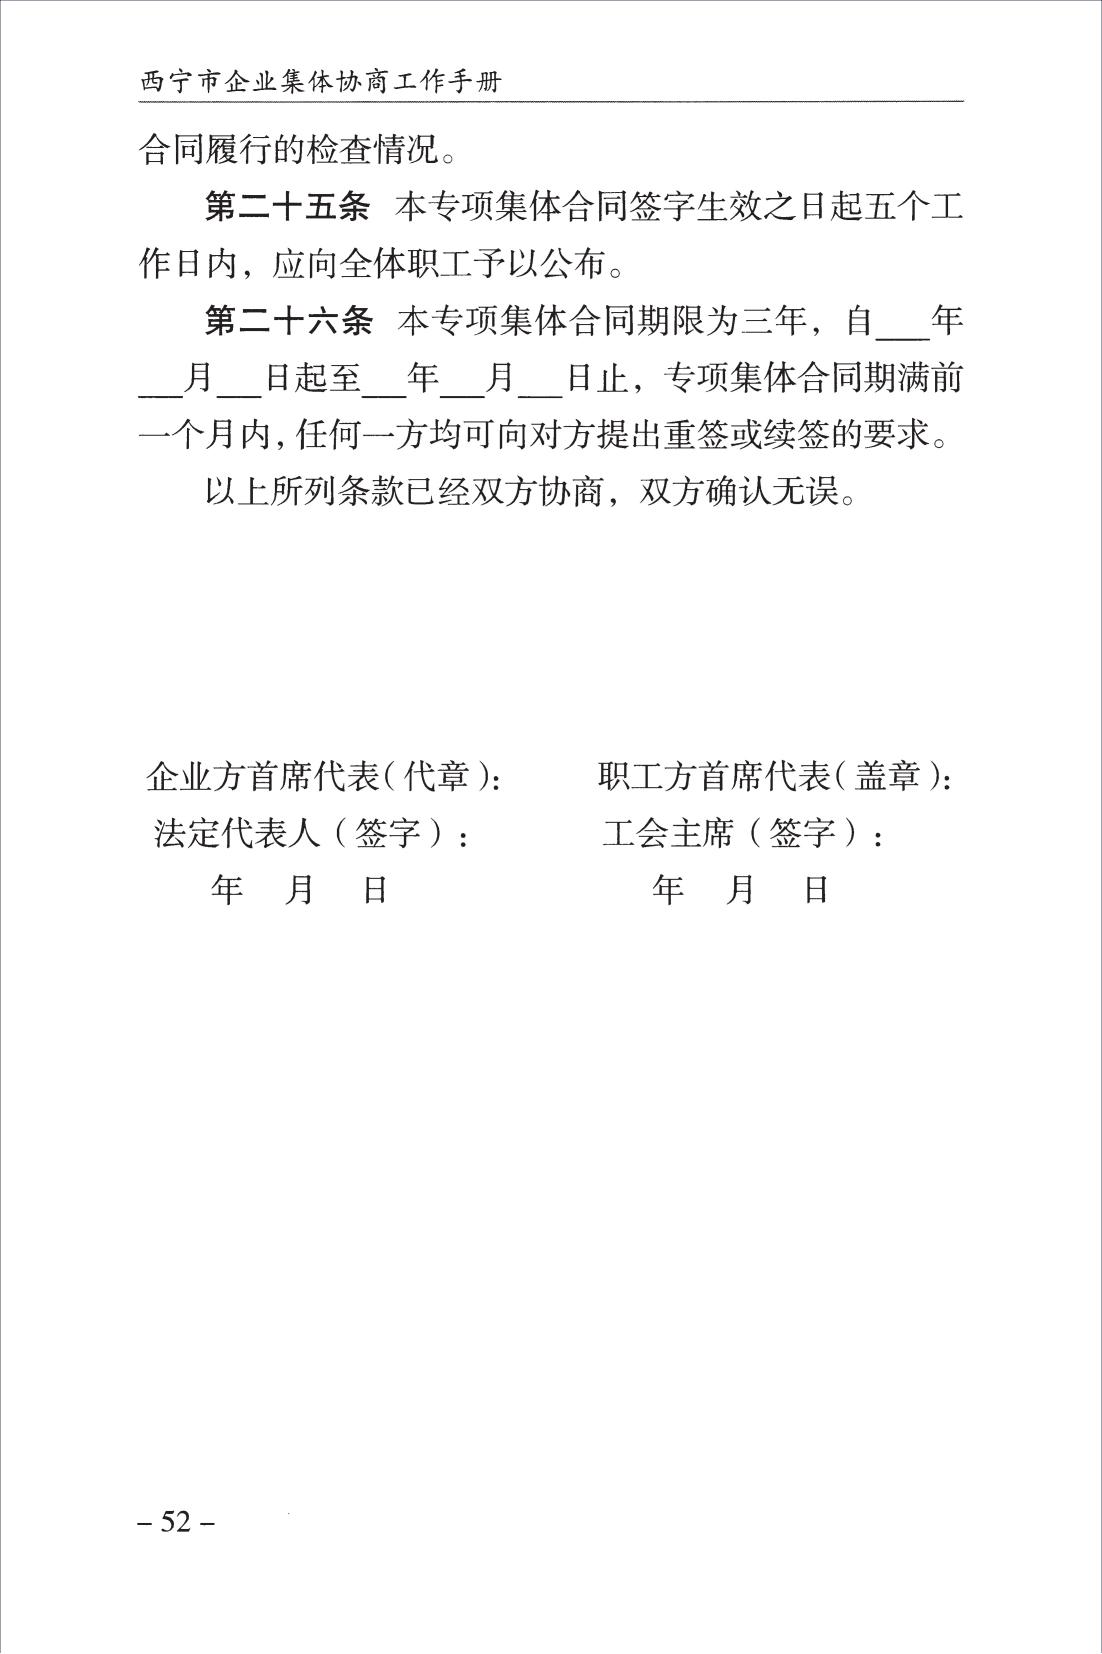 西宁市企业集体协商工作手册_54.jpg